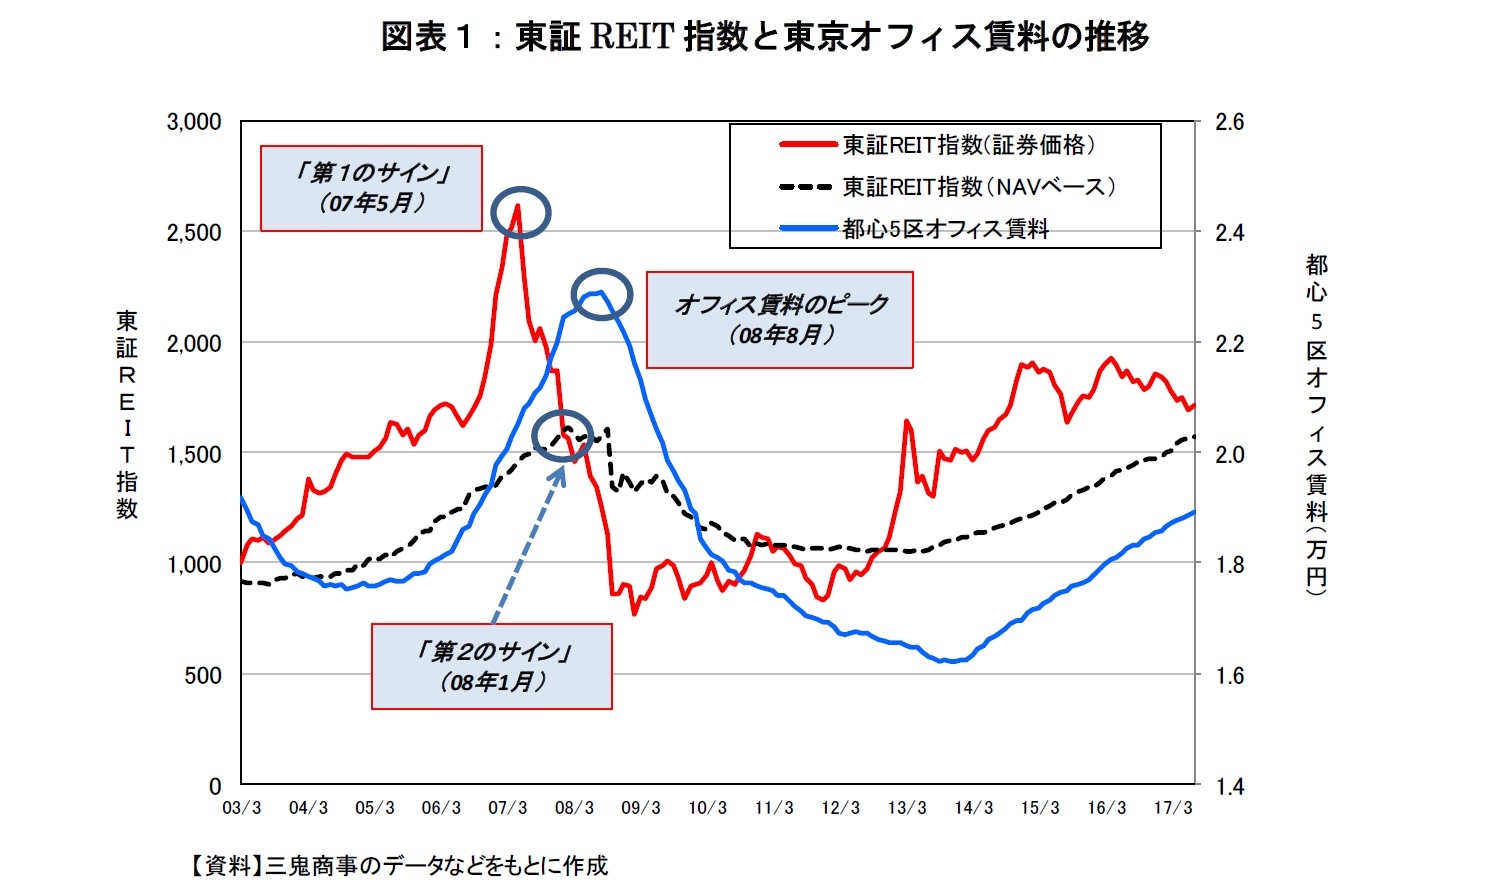 図表１：東証REIT指数と東京オフィス賃料の推移